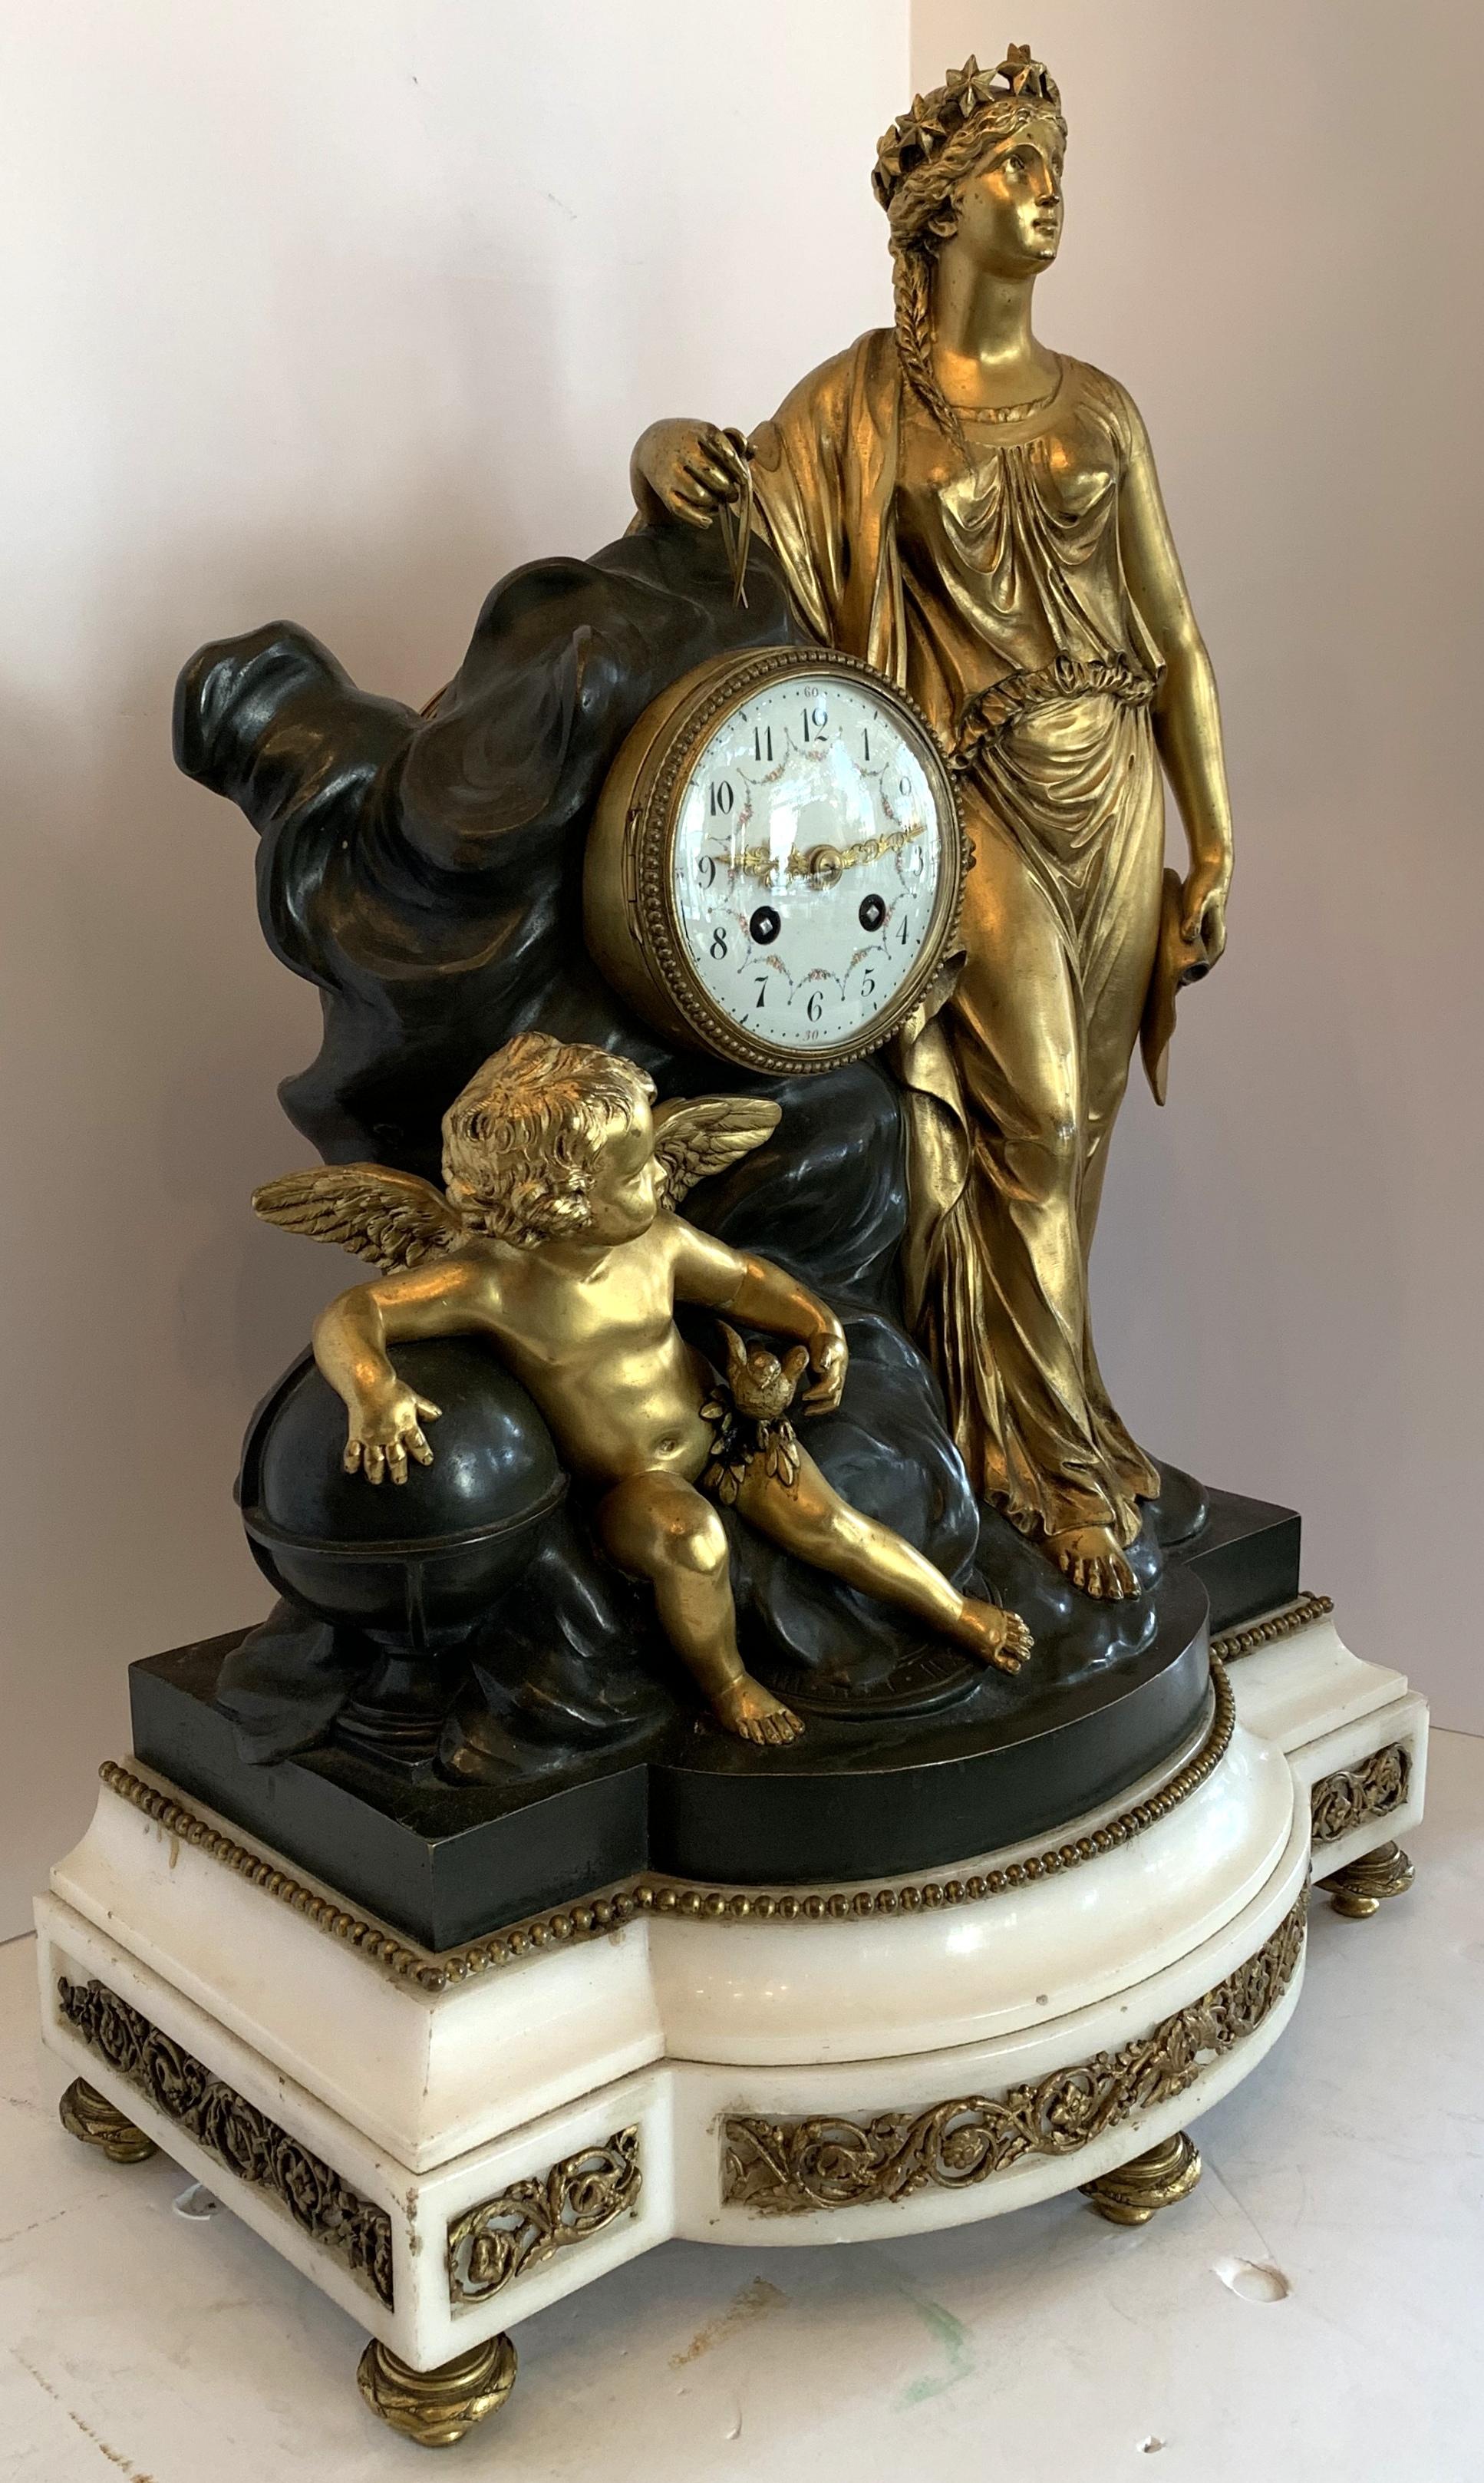 Ein Regency monumentalen doré und patiniert Bronze Ormolu montiert auf Marmorsockel Uhr mit Figuren eines Cherub und ein Mädchen, extrem groß und schwer geschmückt. Die hintere Abdeckung fehlt, sie funktioniert derzeit nicht.
Provenienz: Gekauft